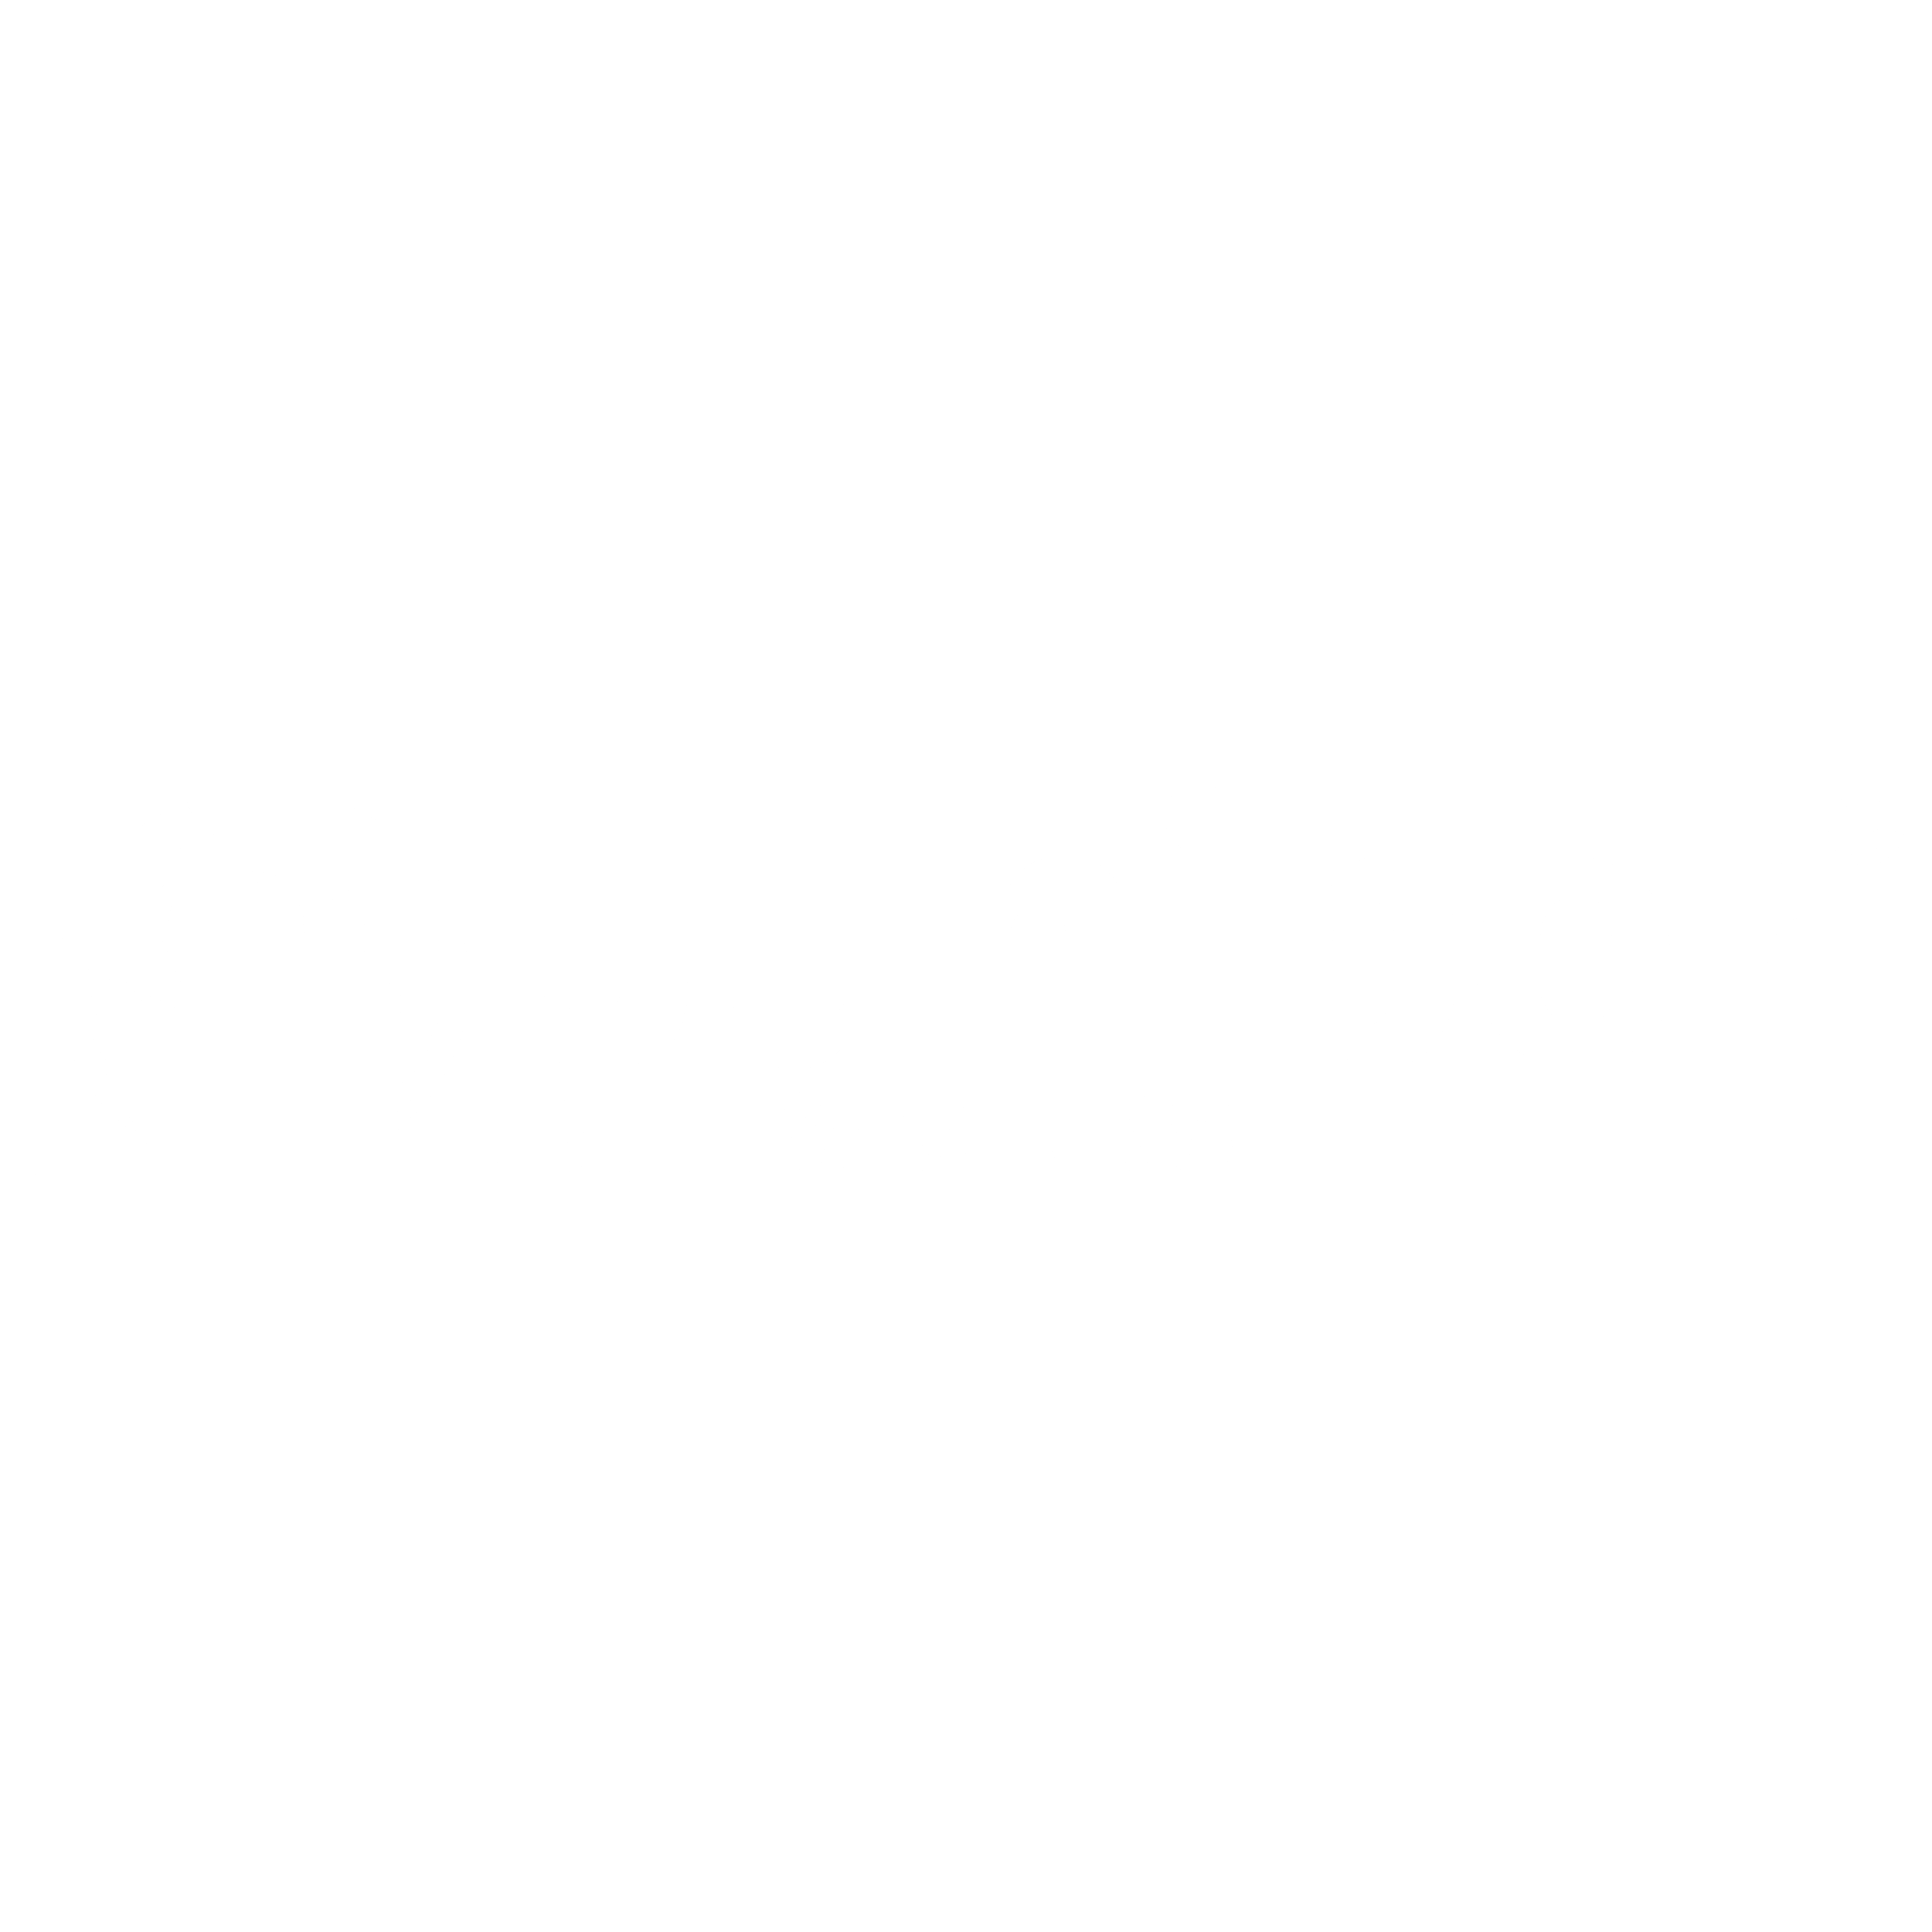 juniper-networks-logo-black-and-white